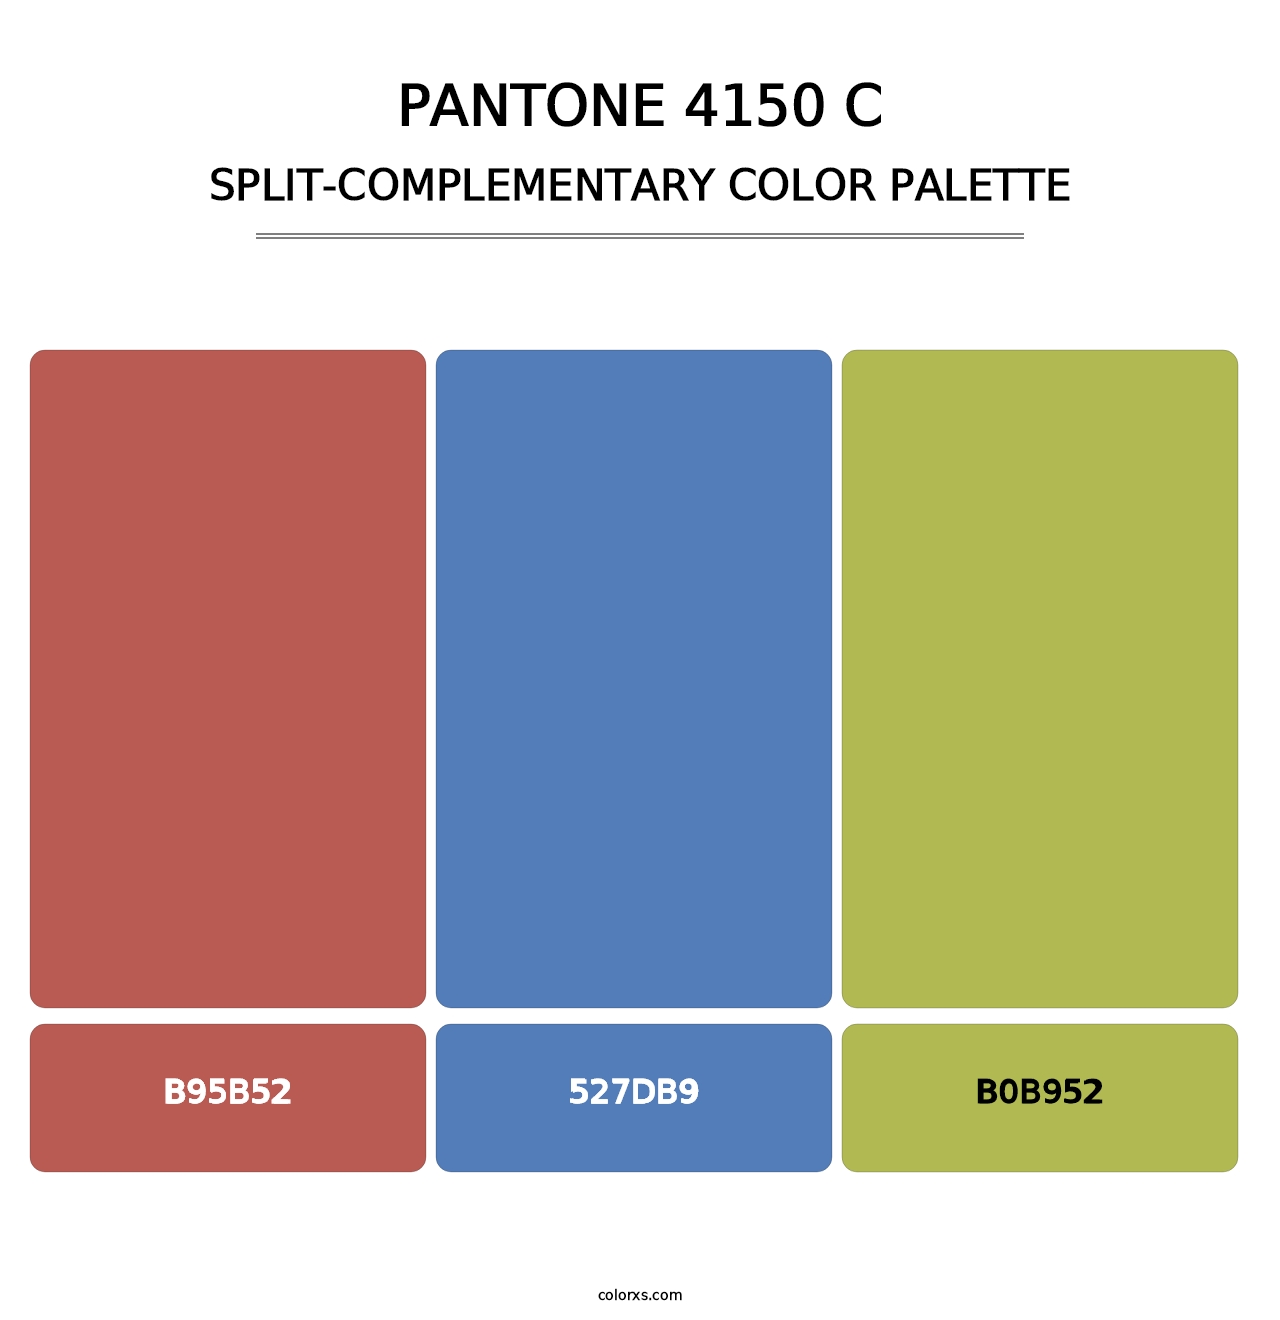 PANTONE 4150 C - Split-Complementary Color Palette